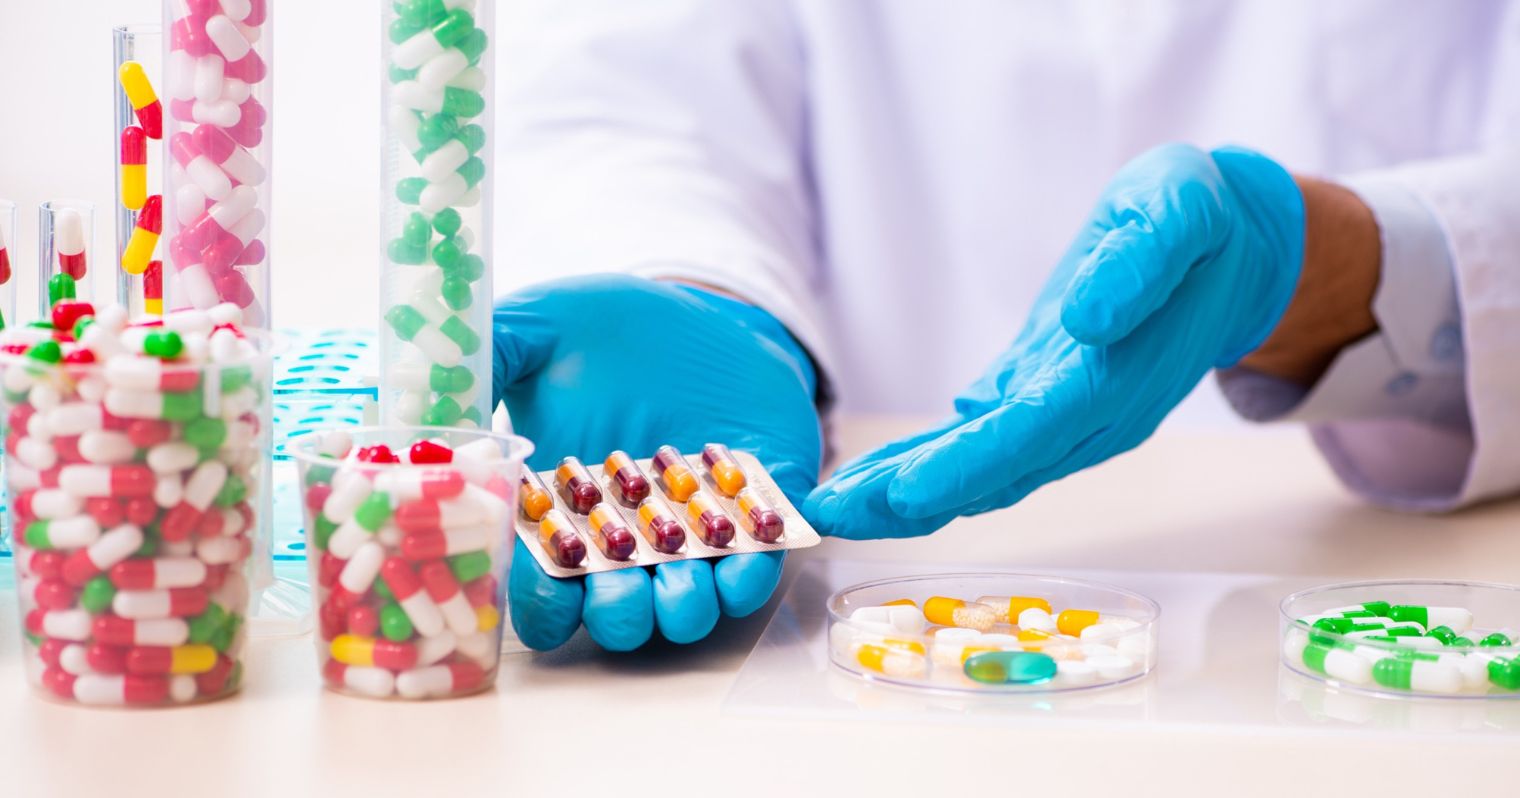 Kék gumikesztyűs kezeken tart színes gyógyszereket egy ember, mellette az asztal sok másik színes gyógyszer van üvegekben.